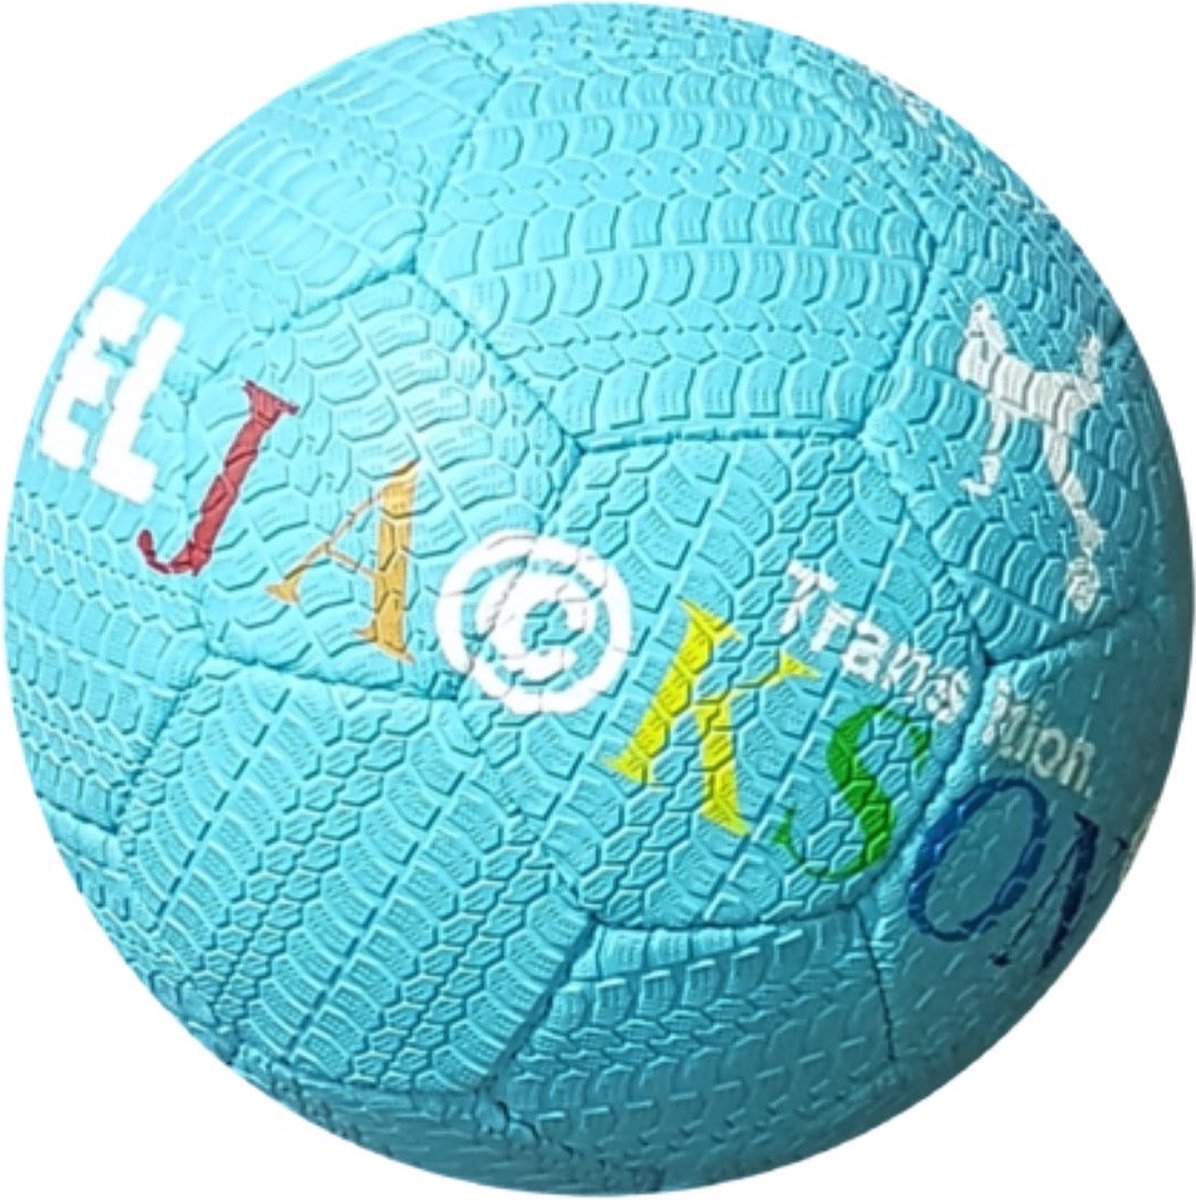 EL JACKSON BALL SKY BLUE - STRAAT BAL - FREESTYLE VOETBAL - STREET BALL - STRAATVOETBAL - ULTIEME GRIP BAL